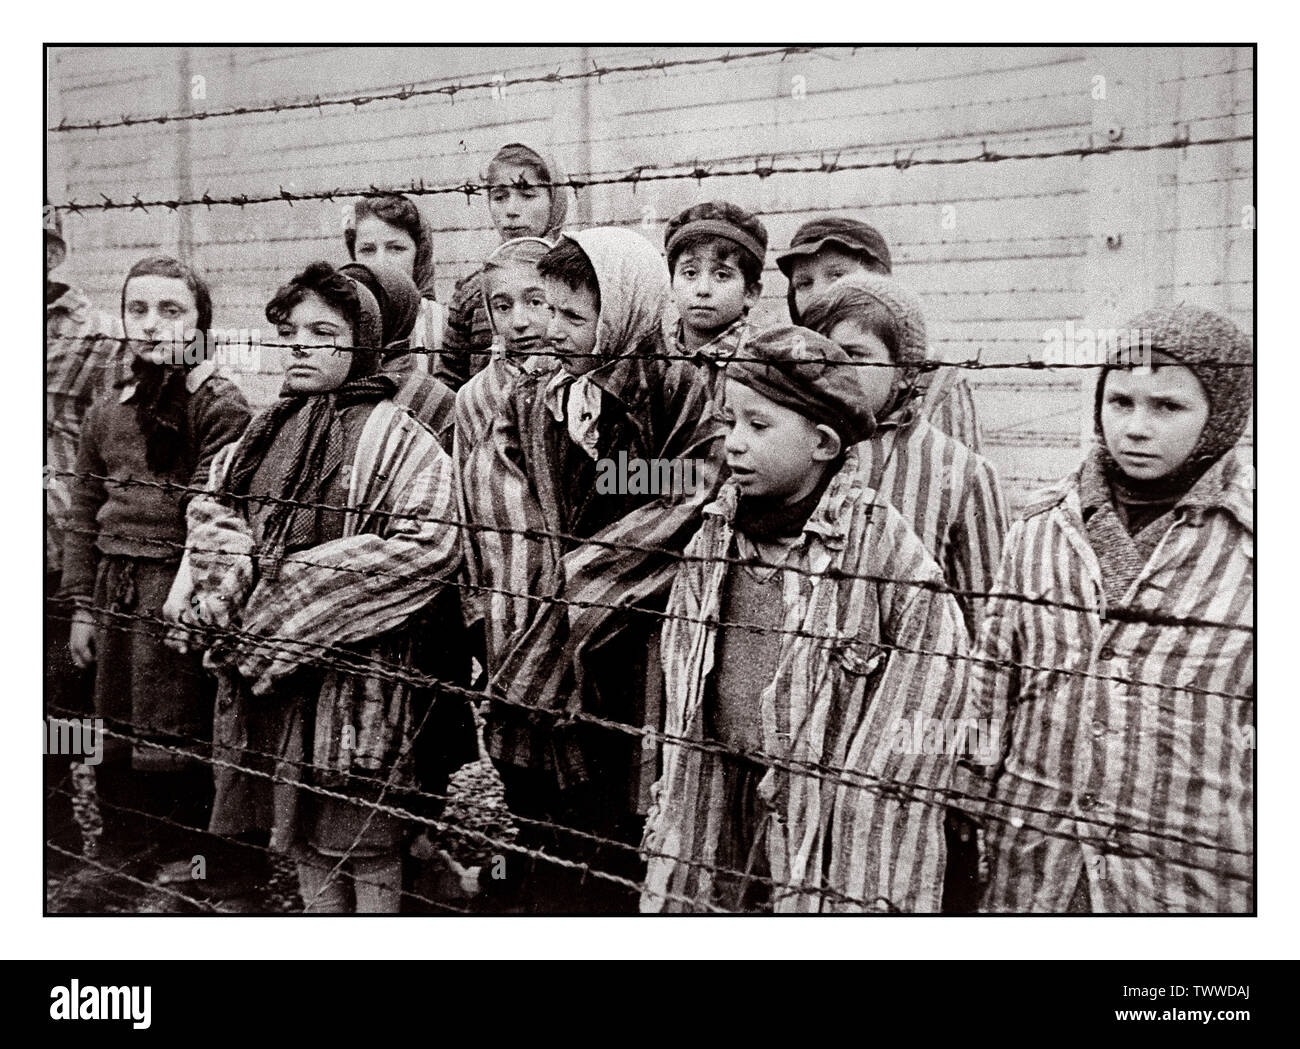 AUSCHWITZ 1945 BAMBINI DETENUTI LIBERAZIONE BAMBINI carcerati indossando divise a strisce guardare fuori per loro liberatori da dietro un filo spinato nella famigerata WW2 nazista di morte-camp Auschwitz Polonia meridionale. La Seconda Guerra Mondiale la Seconda Guerra Mondiale Foto Stock